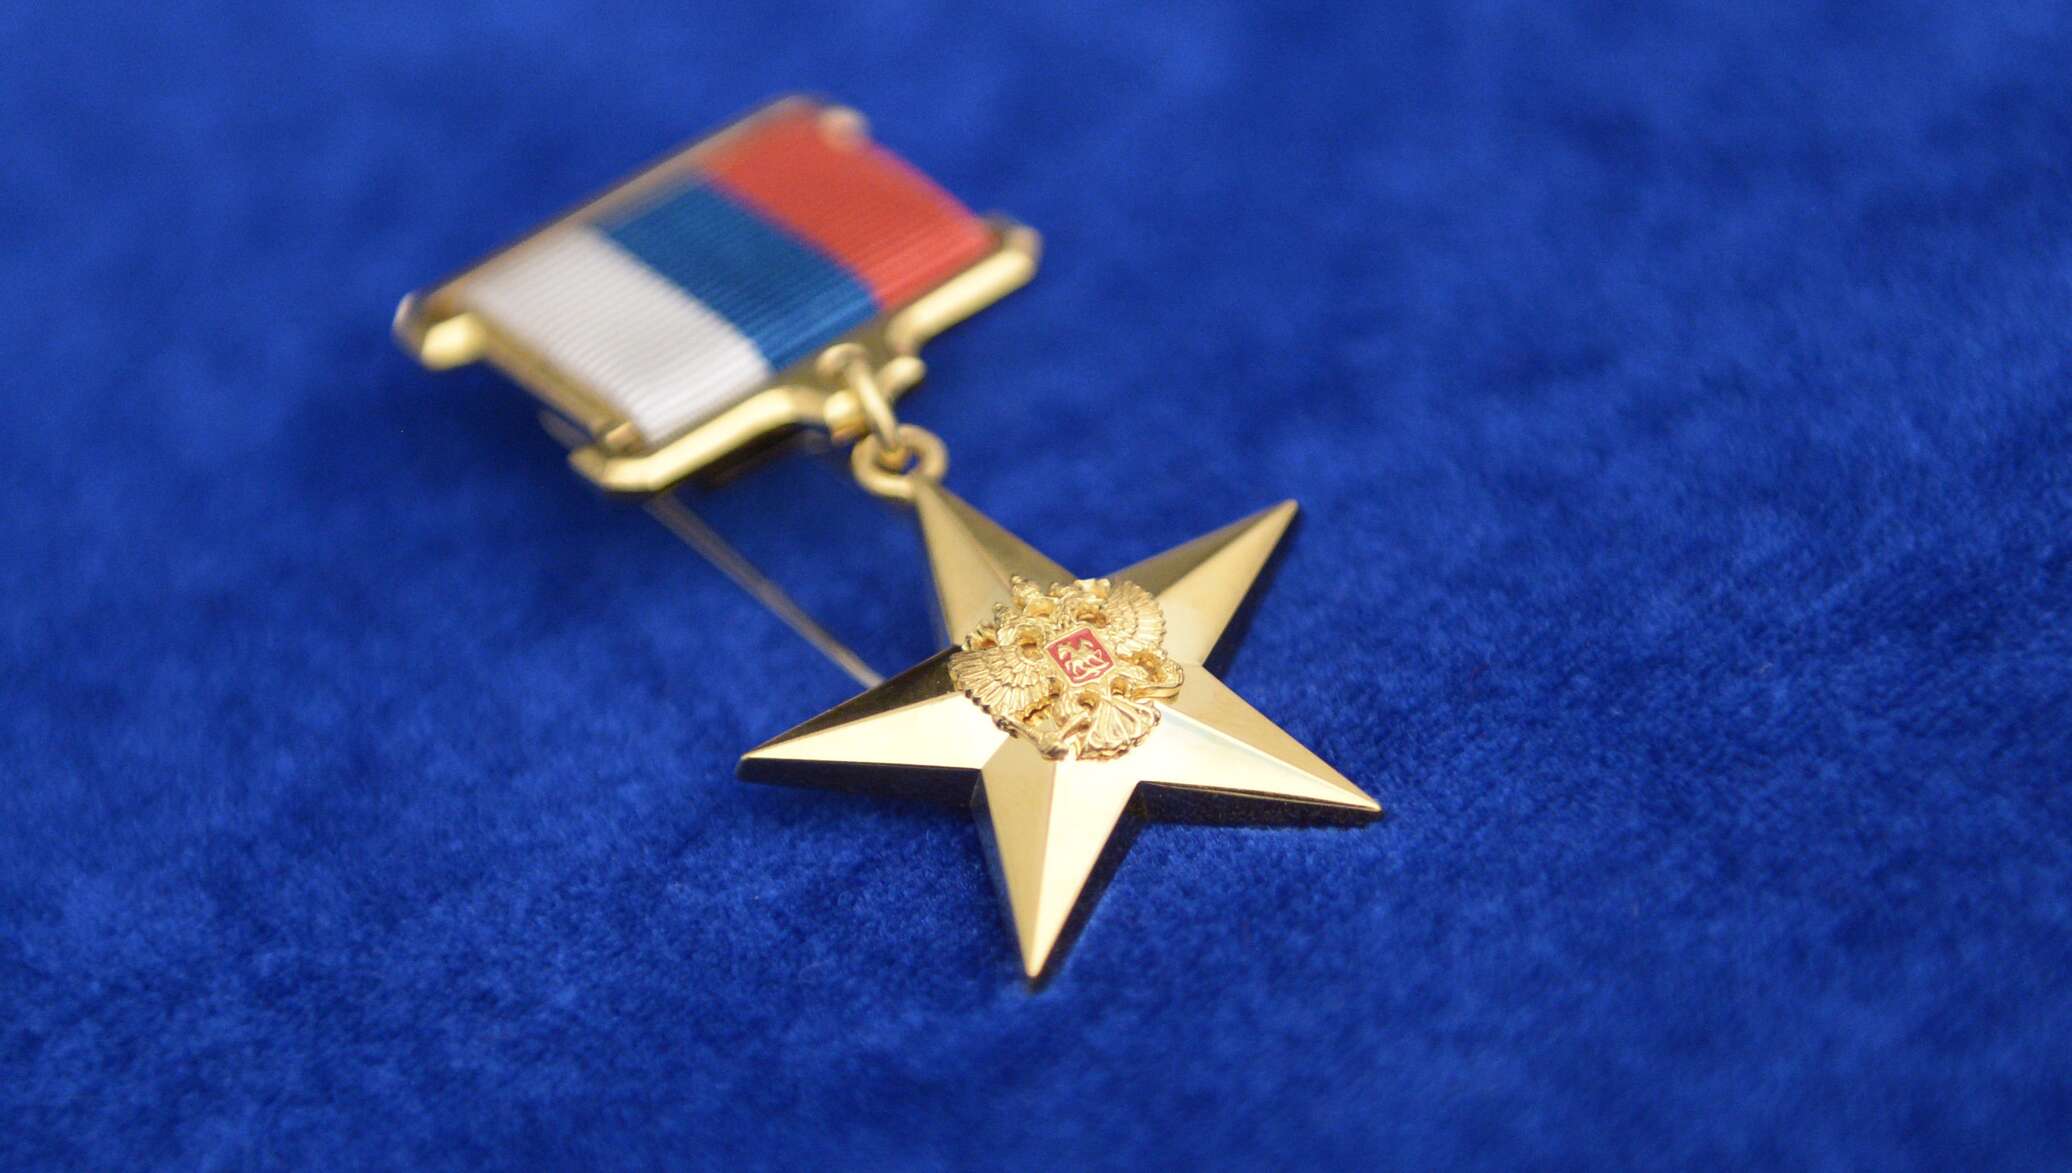 Награда герой труда российской федерации